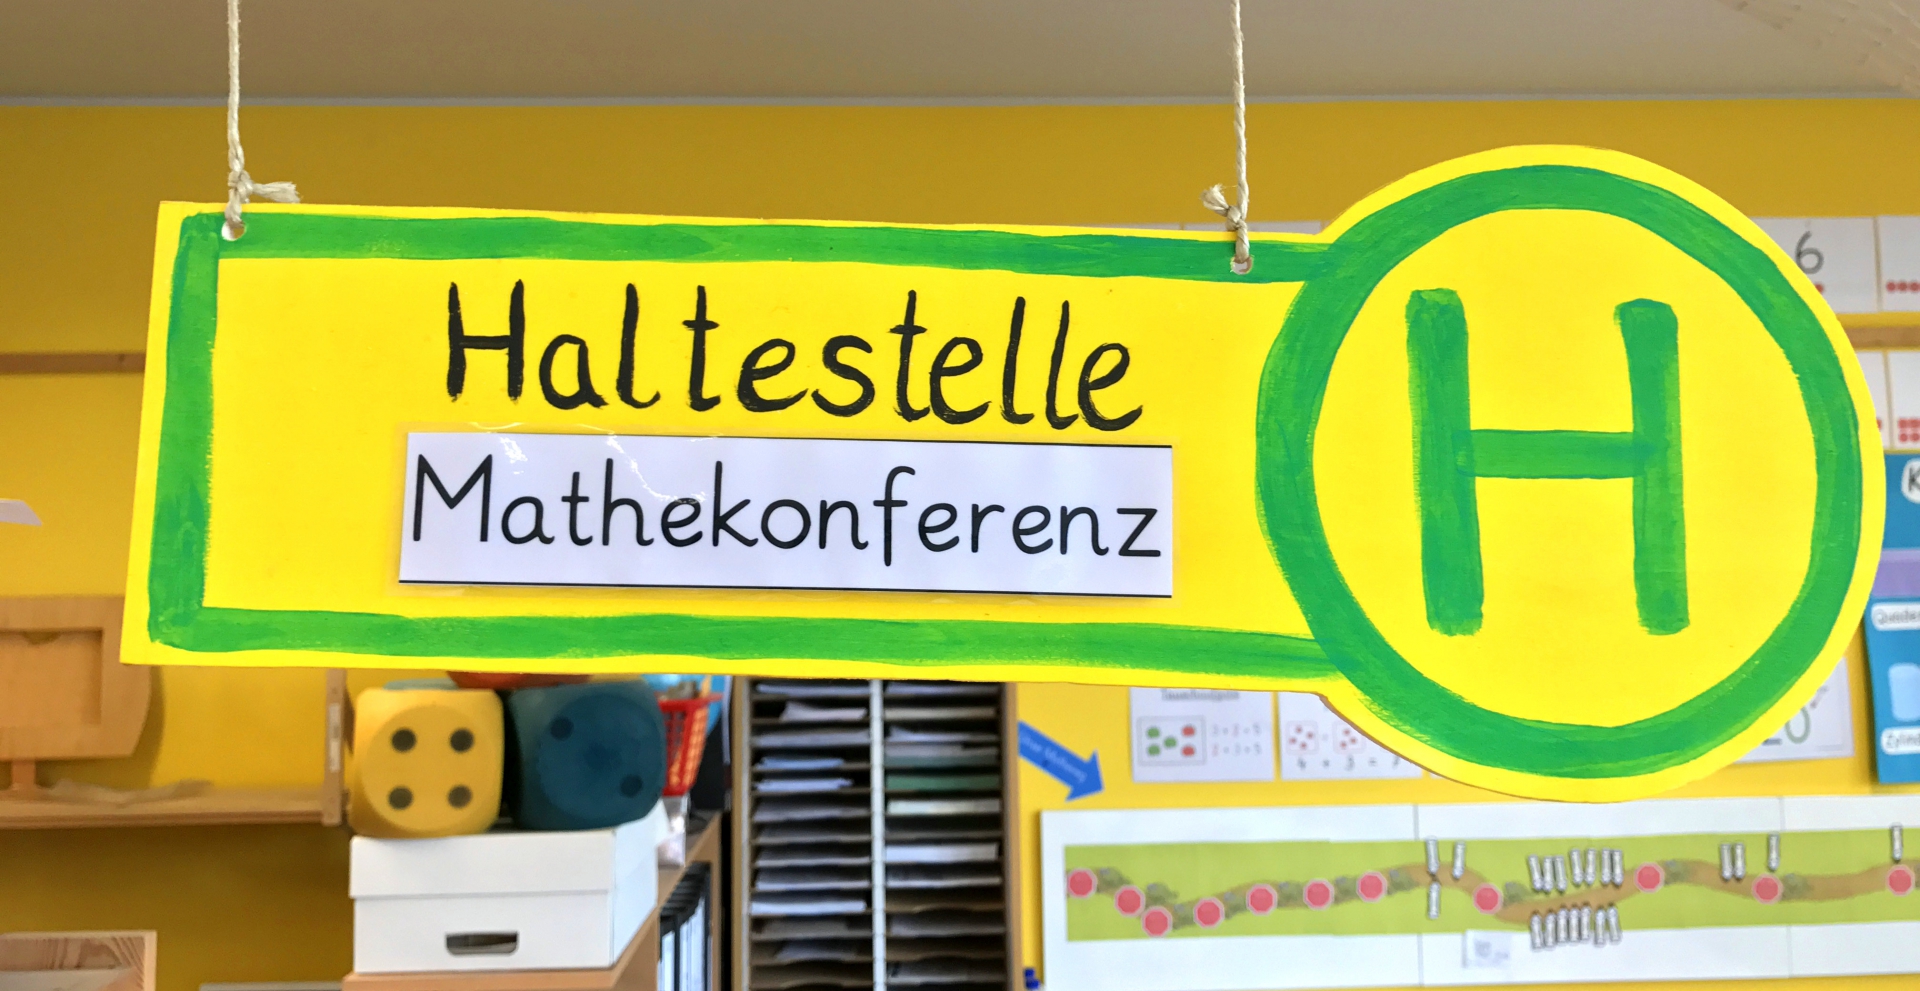 Plakat mit der Aufschrift „Haltestelle Mathekonferenz“ mit Haltestellen-Logo (grünes H auf gelbem Hintergrund).